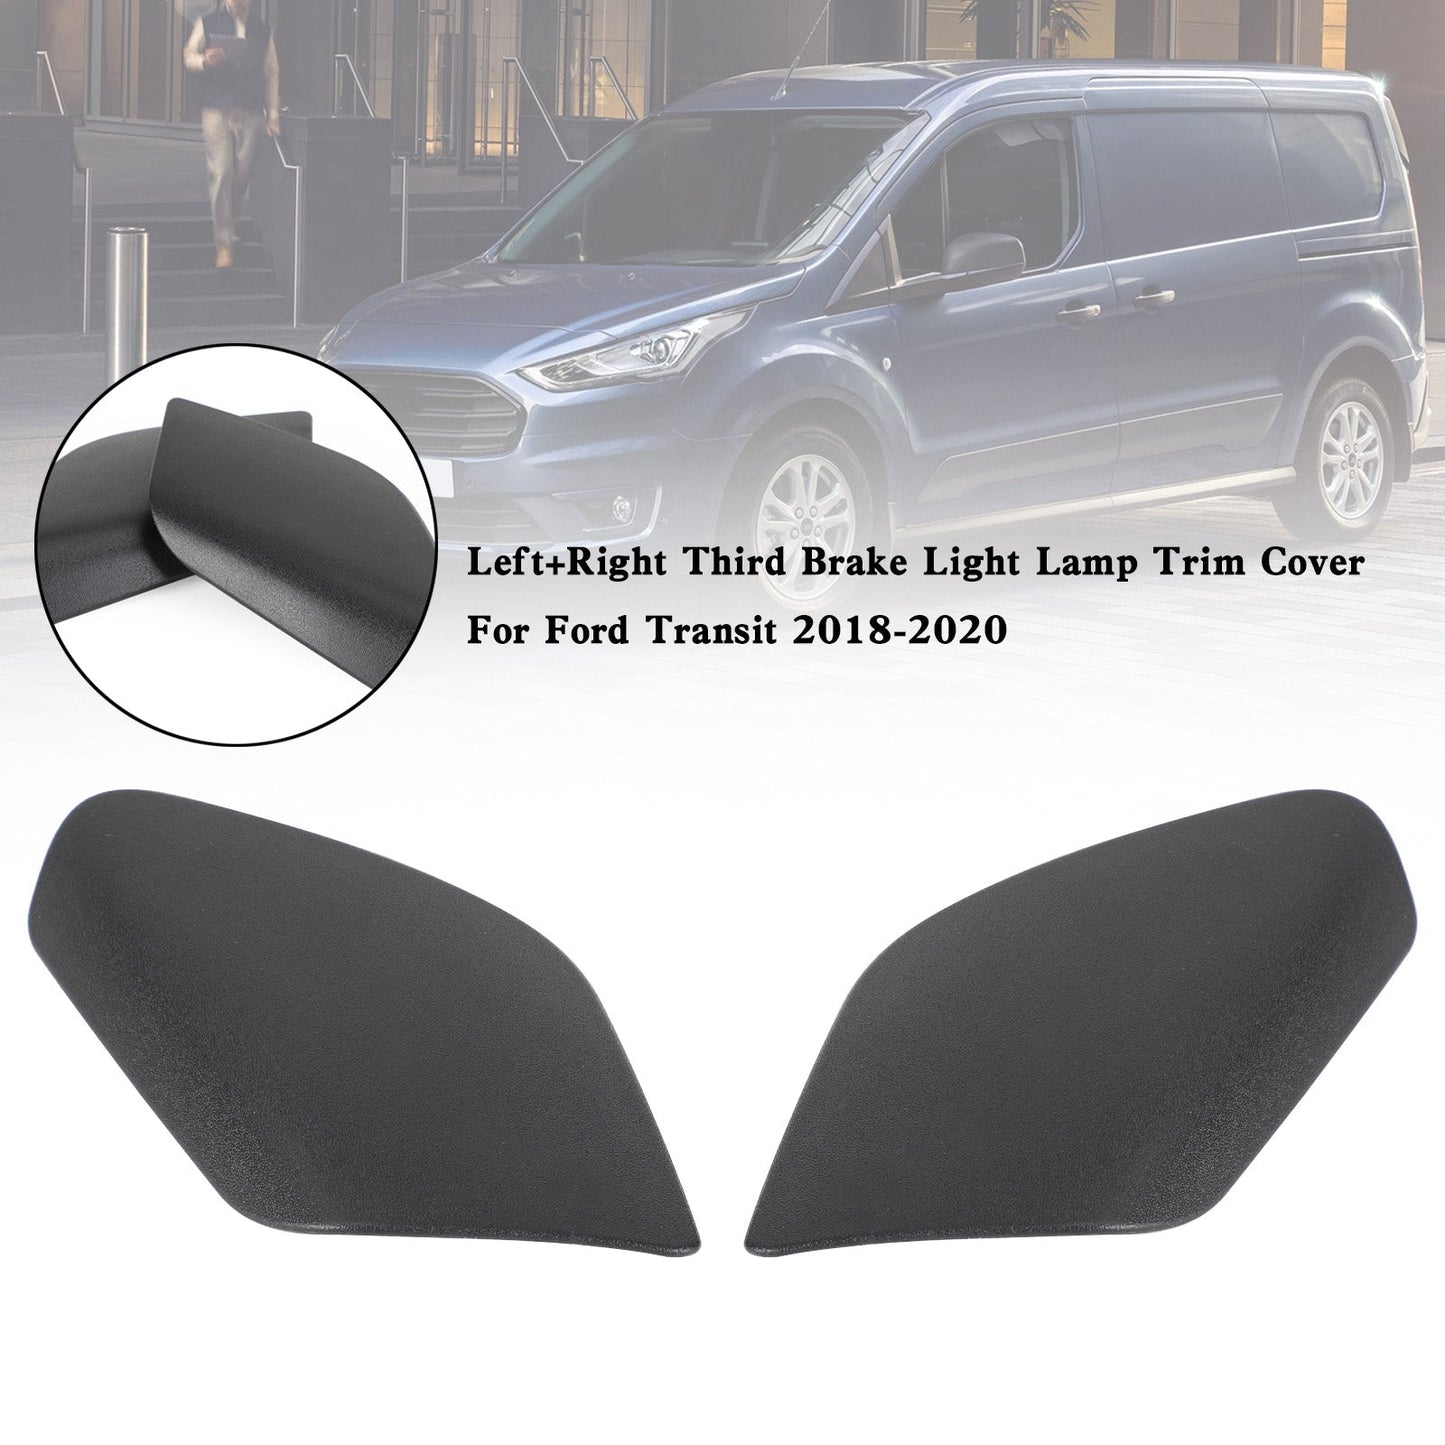 Ford Transit 2018-2020 Left+Right Third Brake Light Lamp Trim Cover